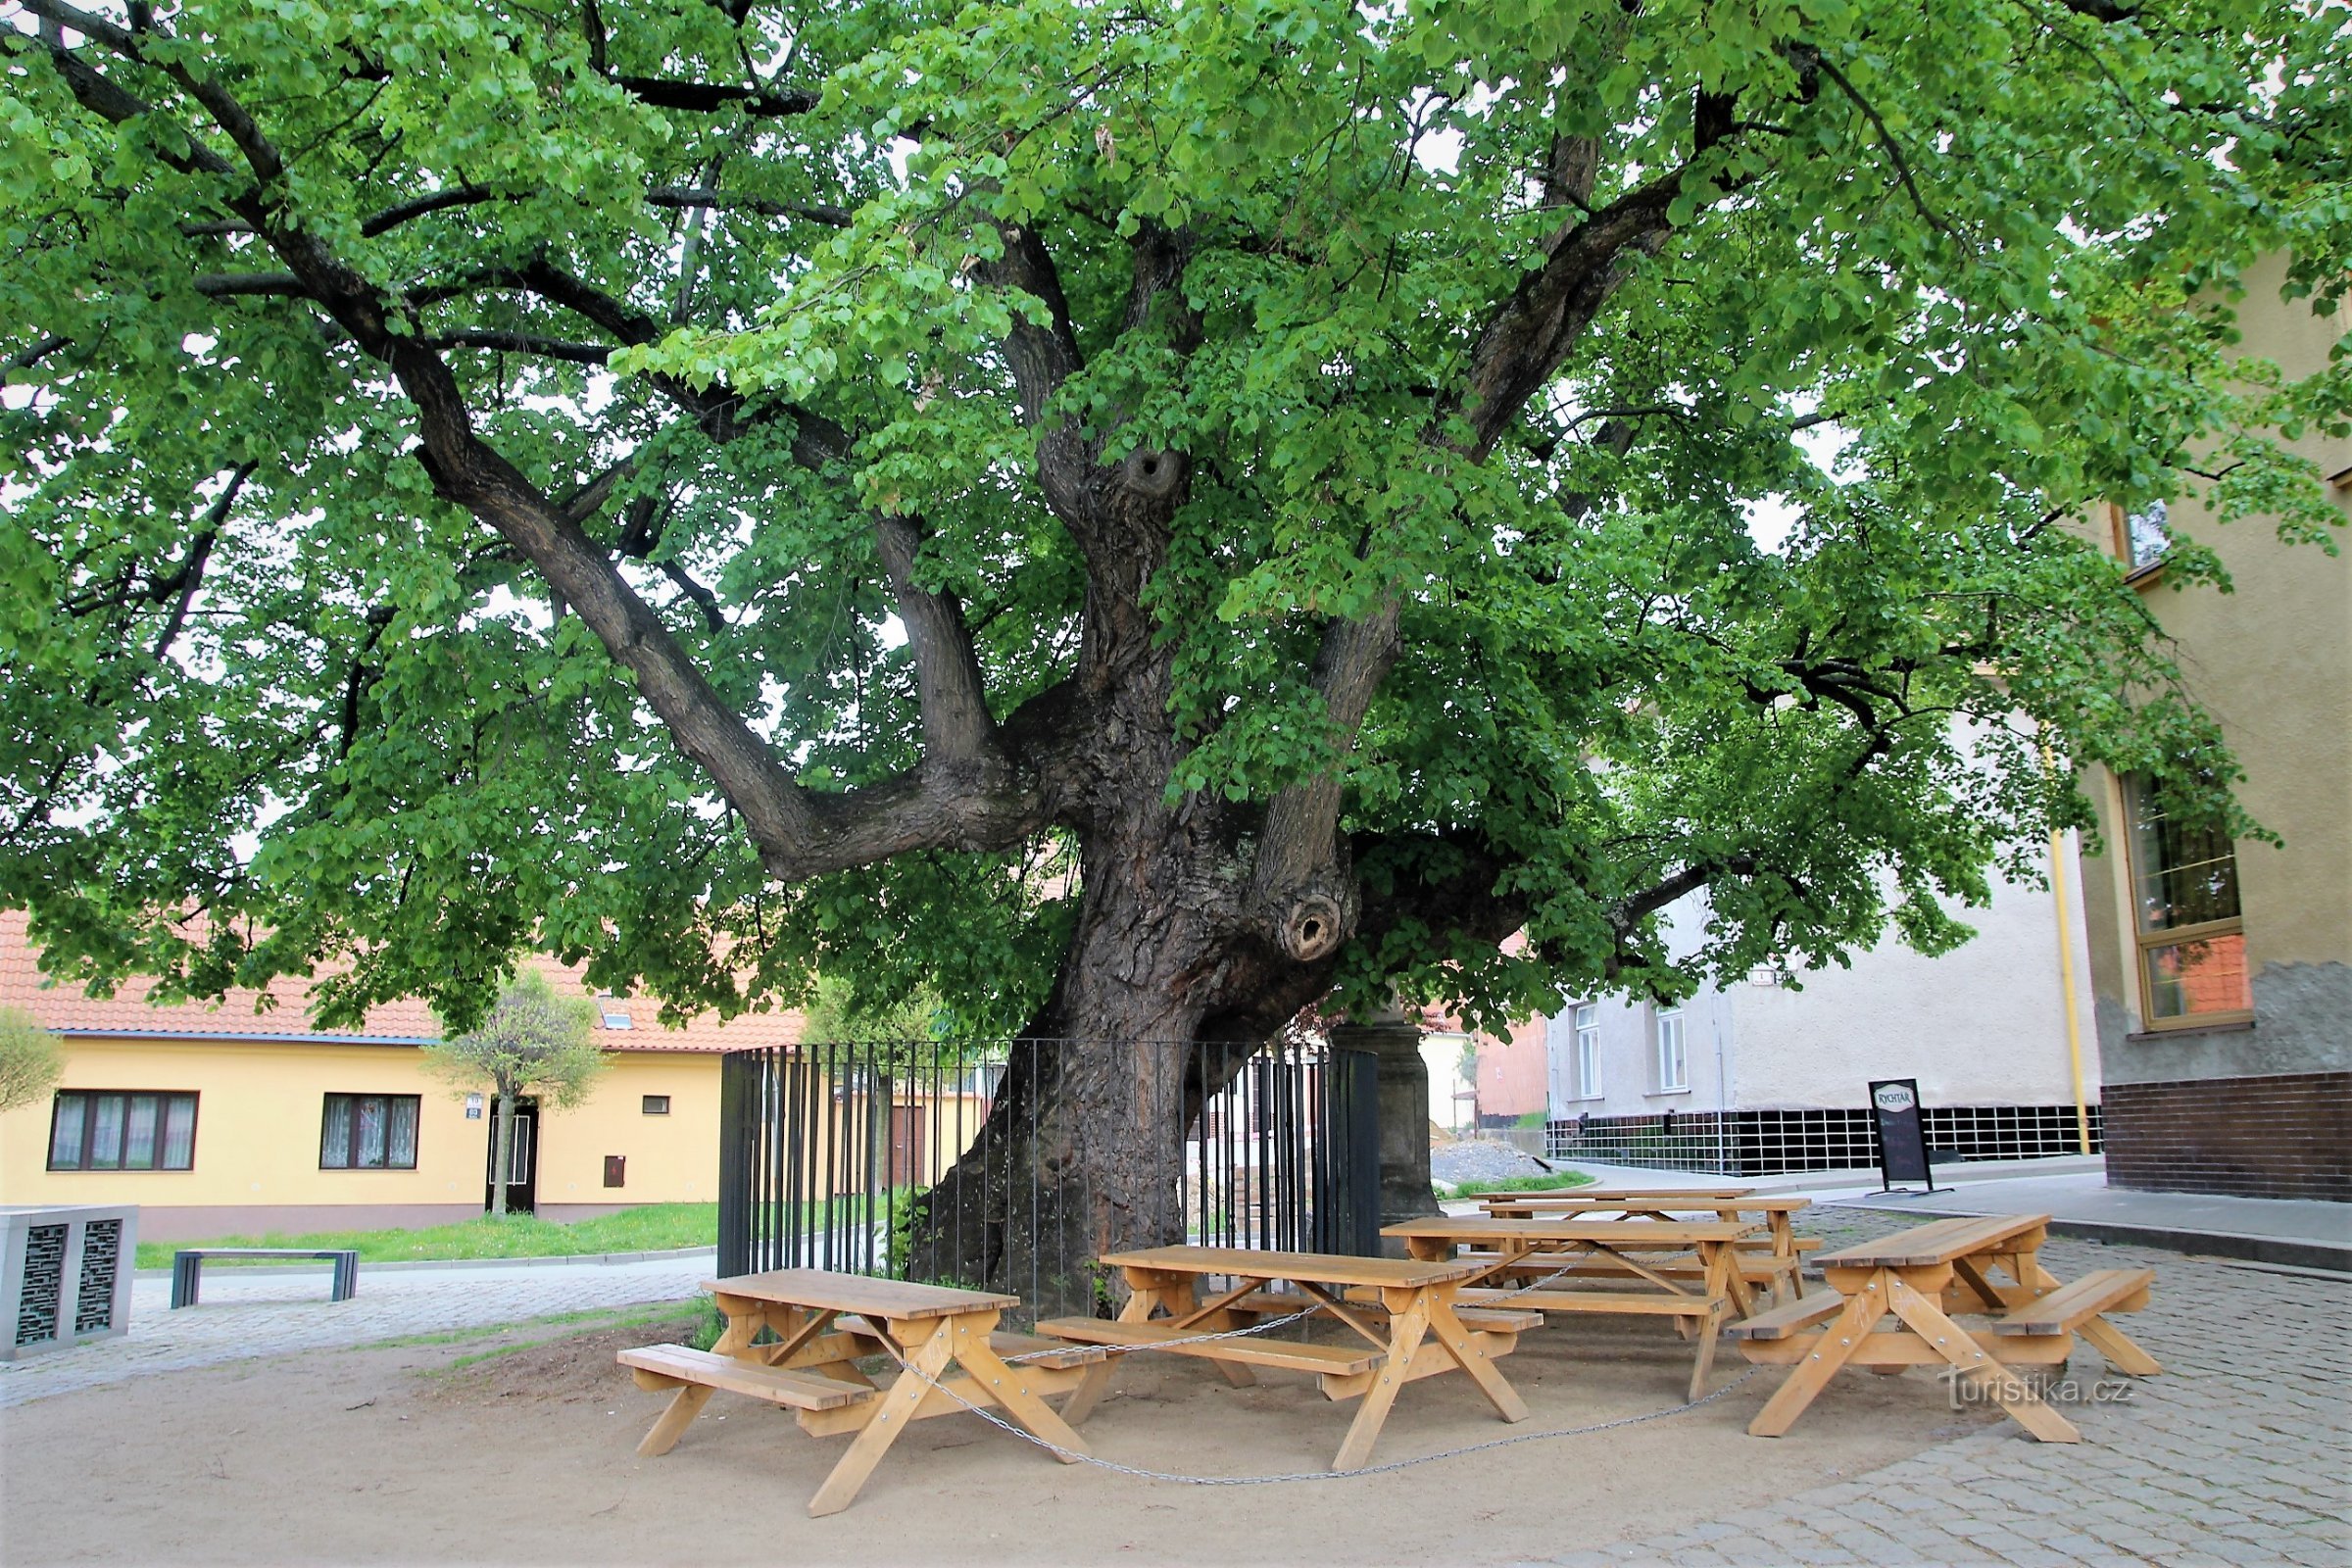 Brno-Bystrc - mindeværdigt lindetræ